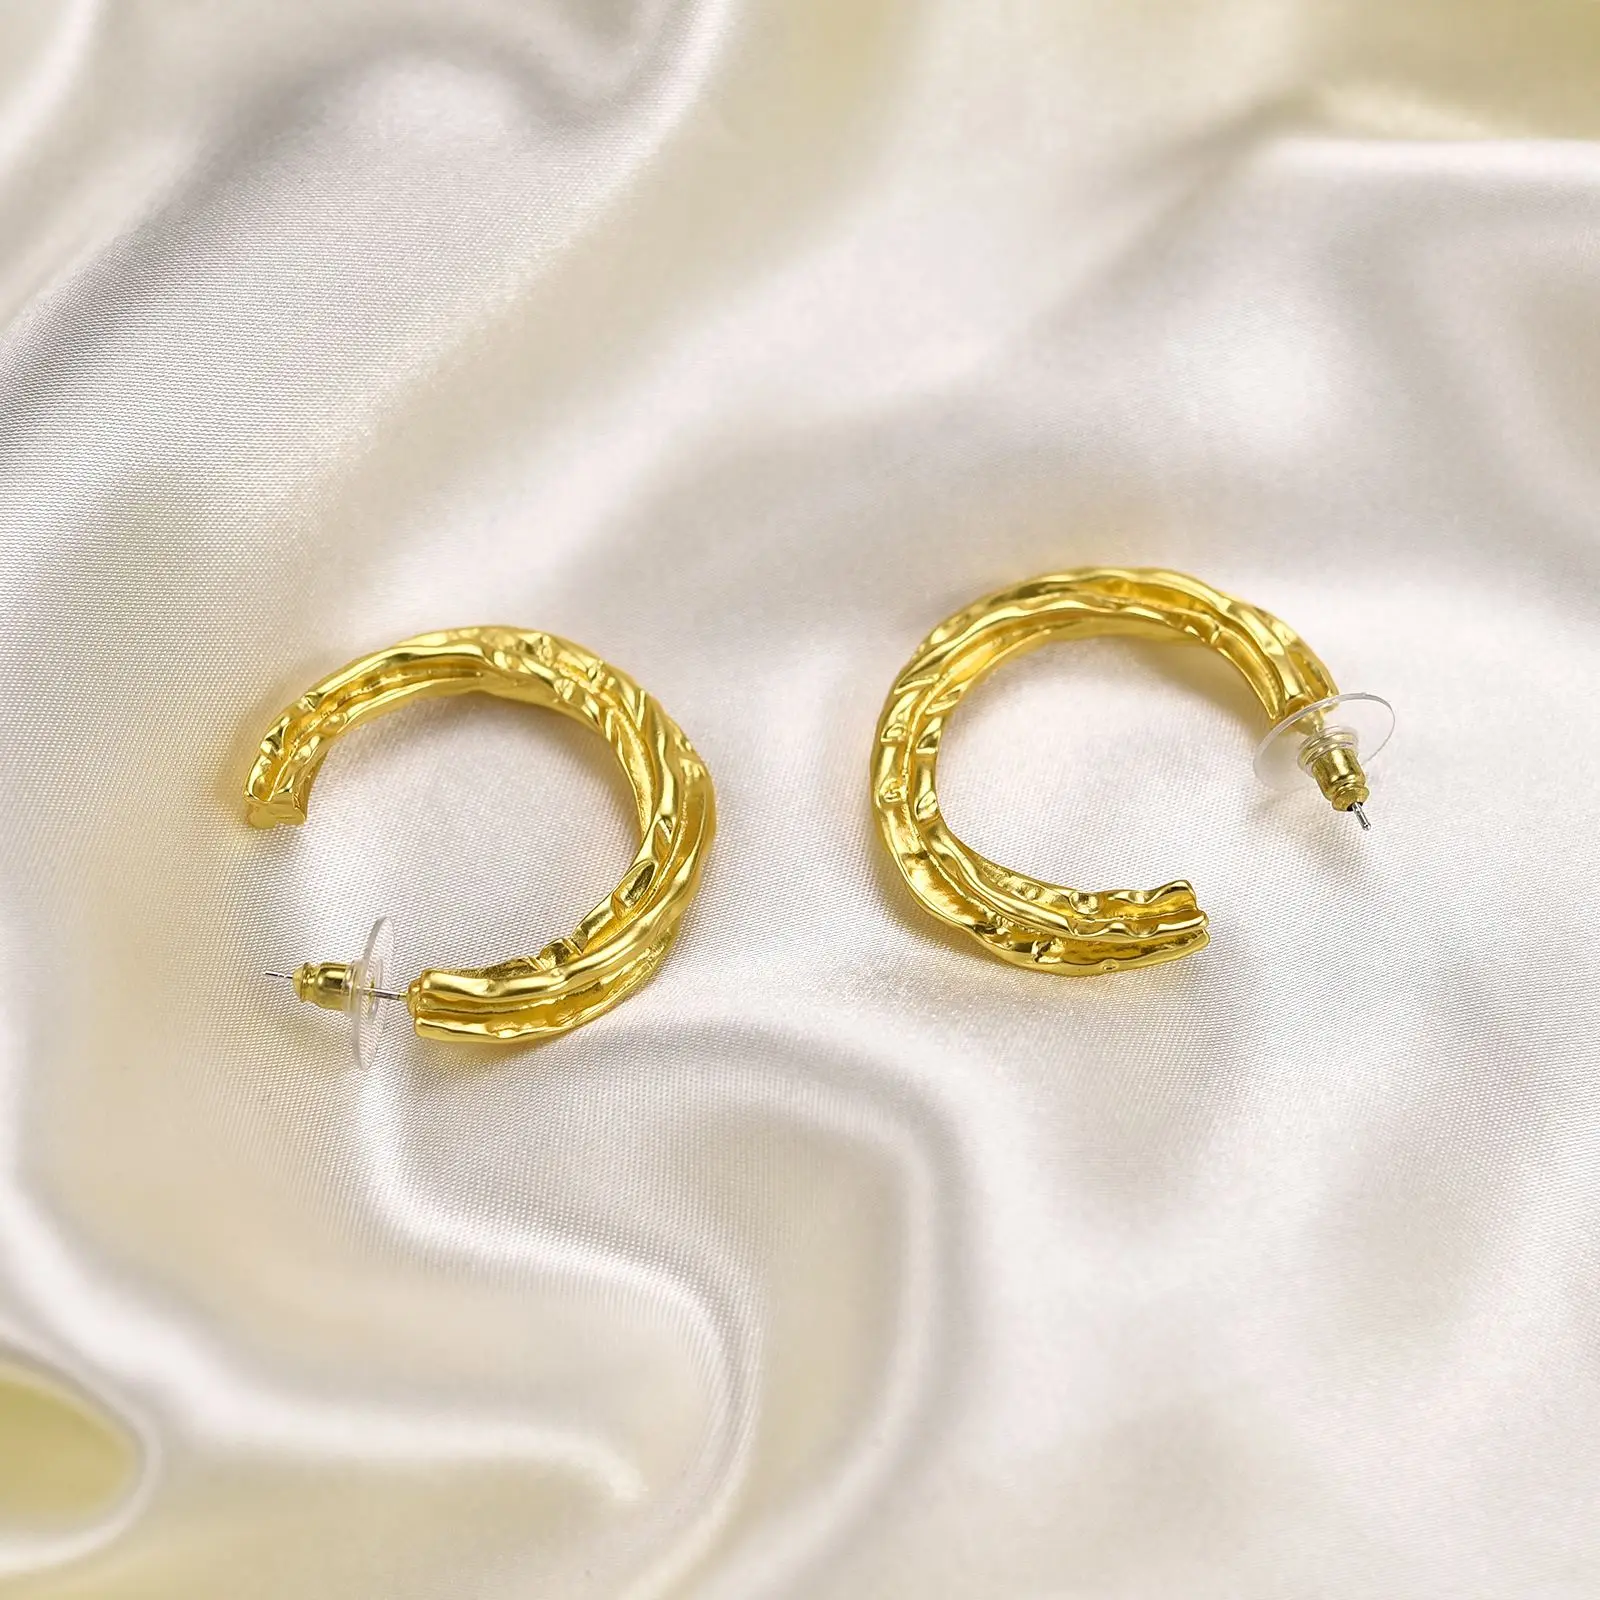 Новая 1 пара сережек из стерлингового серебра 925 пробы, оригинальные французские серьги из гладкого золота неправильной закрутки для женщин, подарок для ювелирных украшений . ' - ' . 0